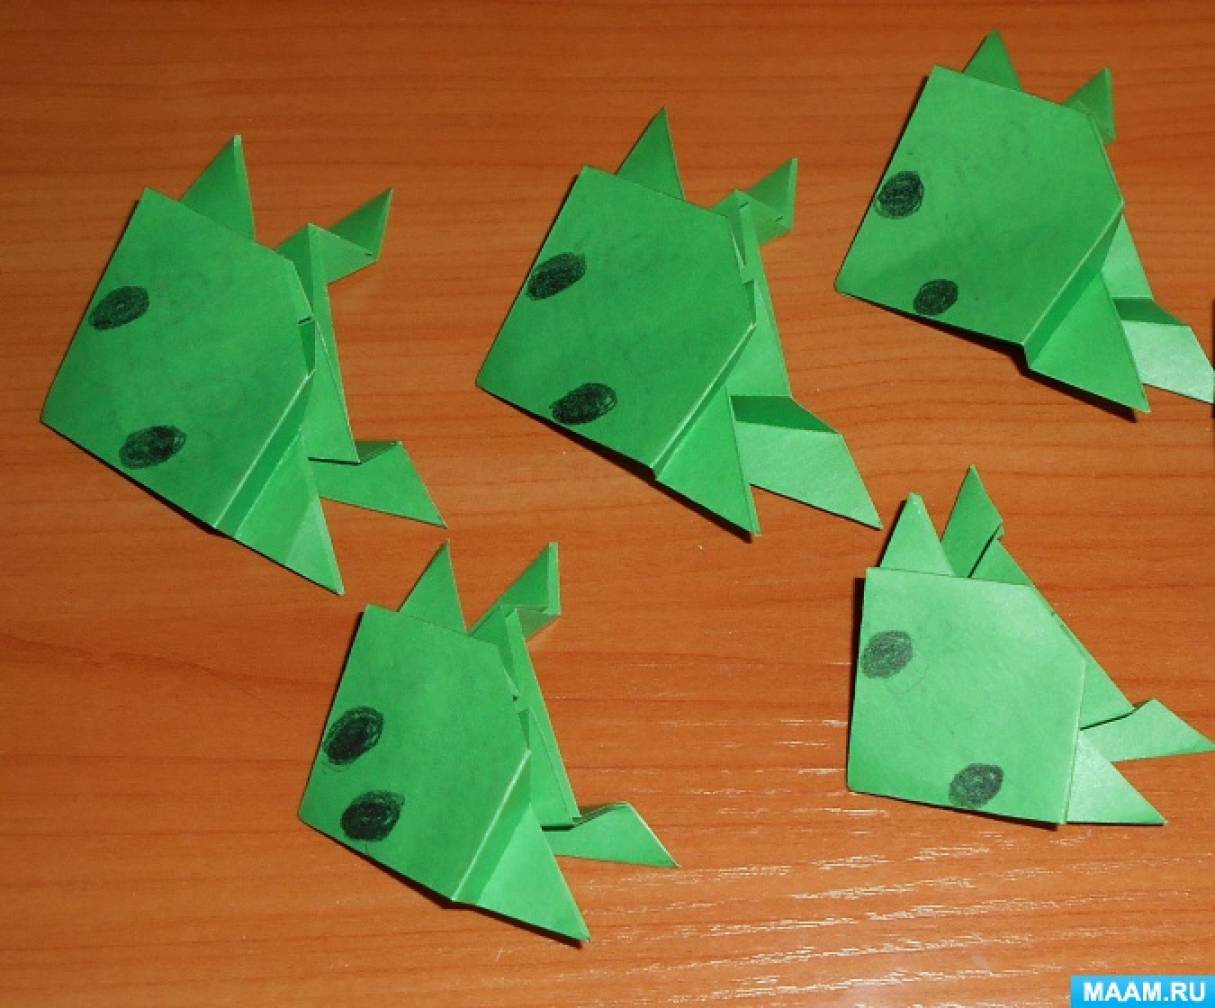 Майстер-клас з конструювання з паперу в техніці орігамі «Жаба»   Майстер - клас для дітей середнього дошкільного віку Конструювання з паперу в техніці орігамі «Жаба» Для проведення гри «Жаби» нам потрібні були жаби на кожну дитину